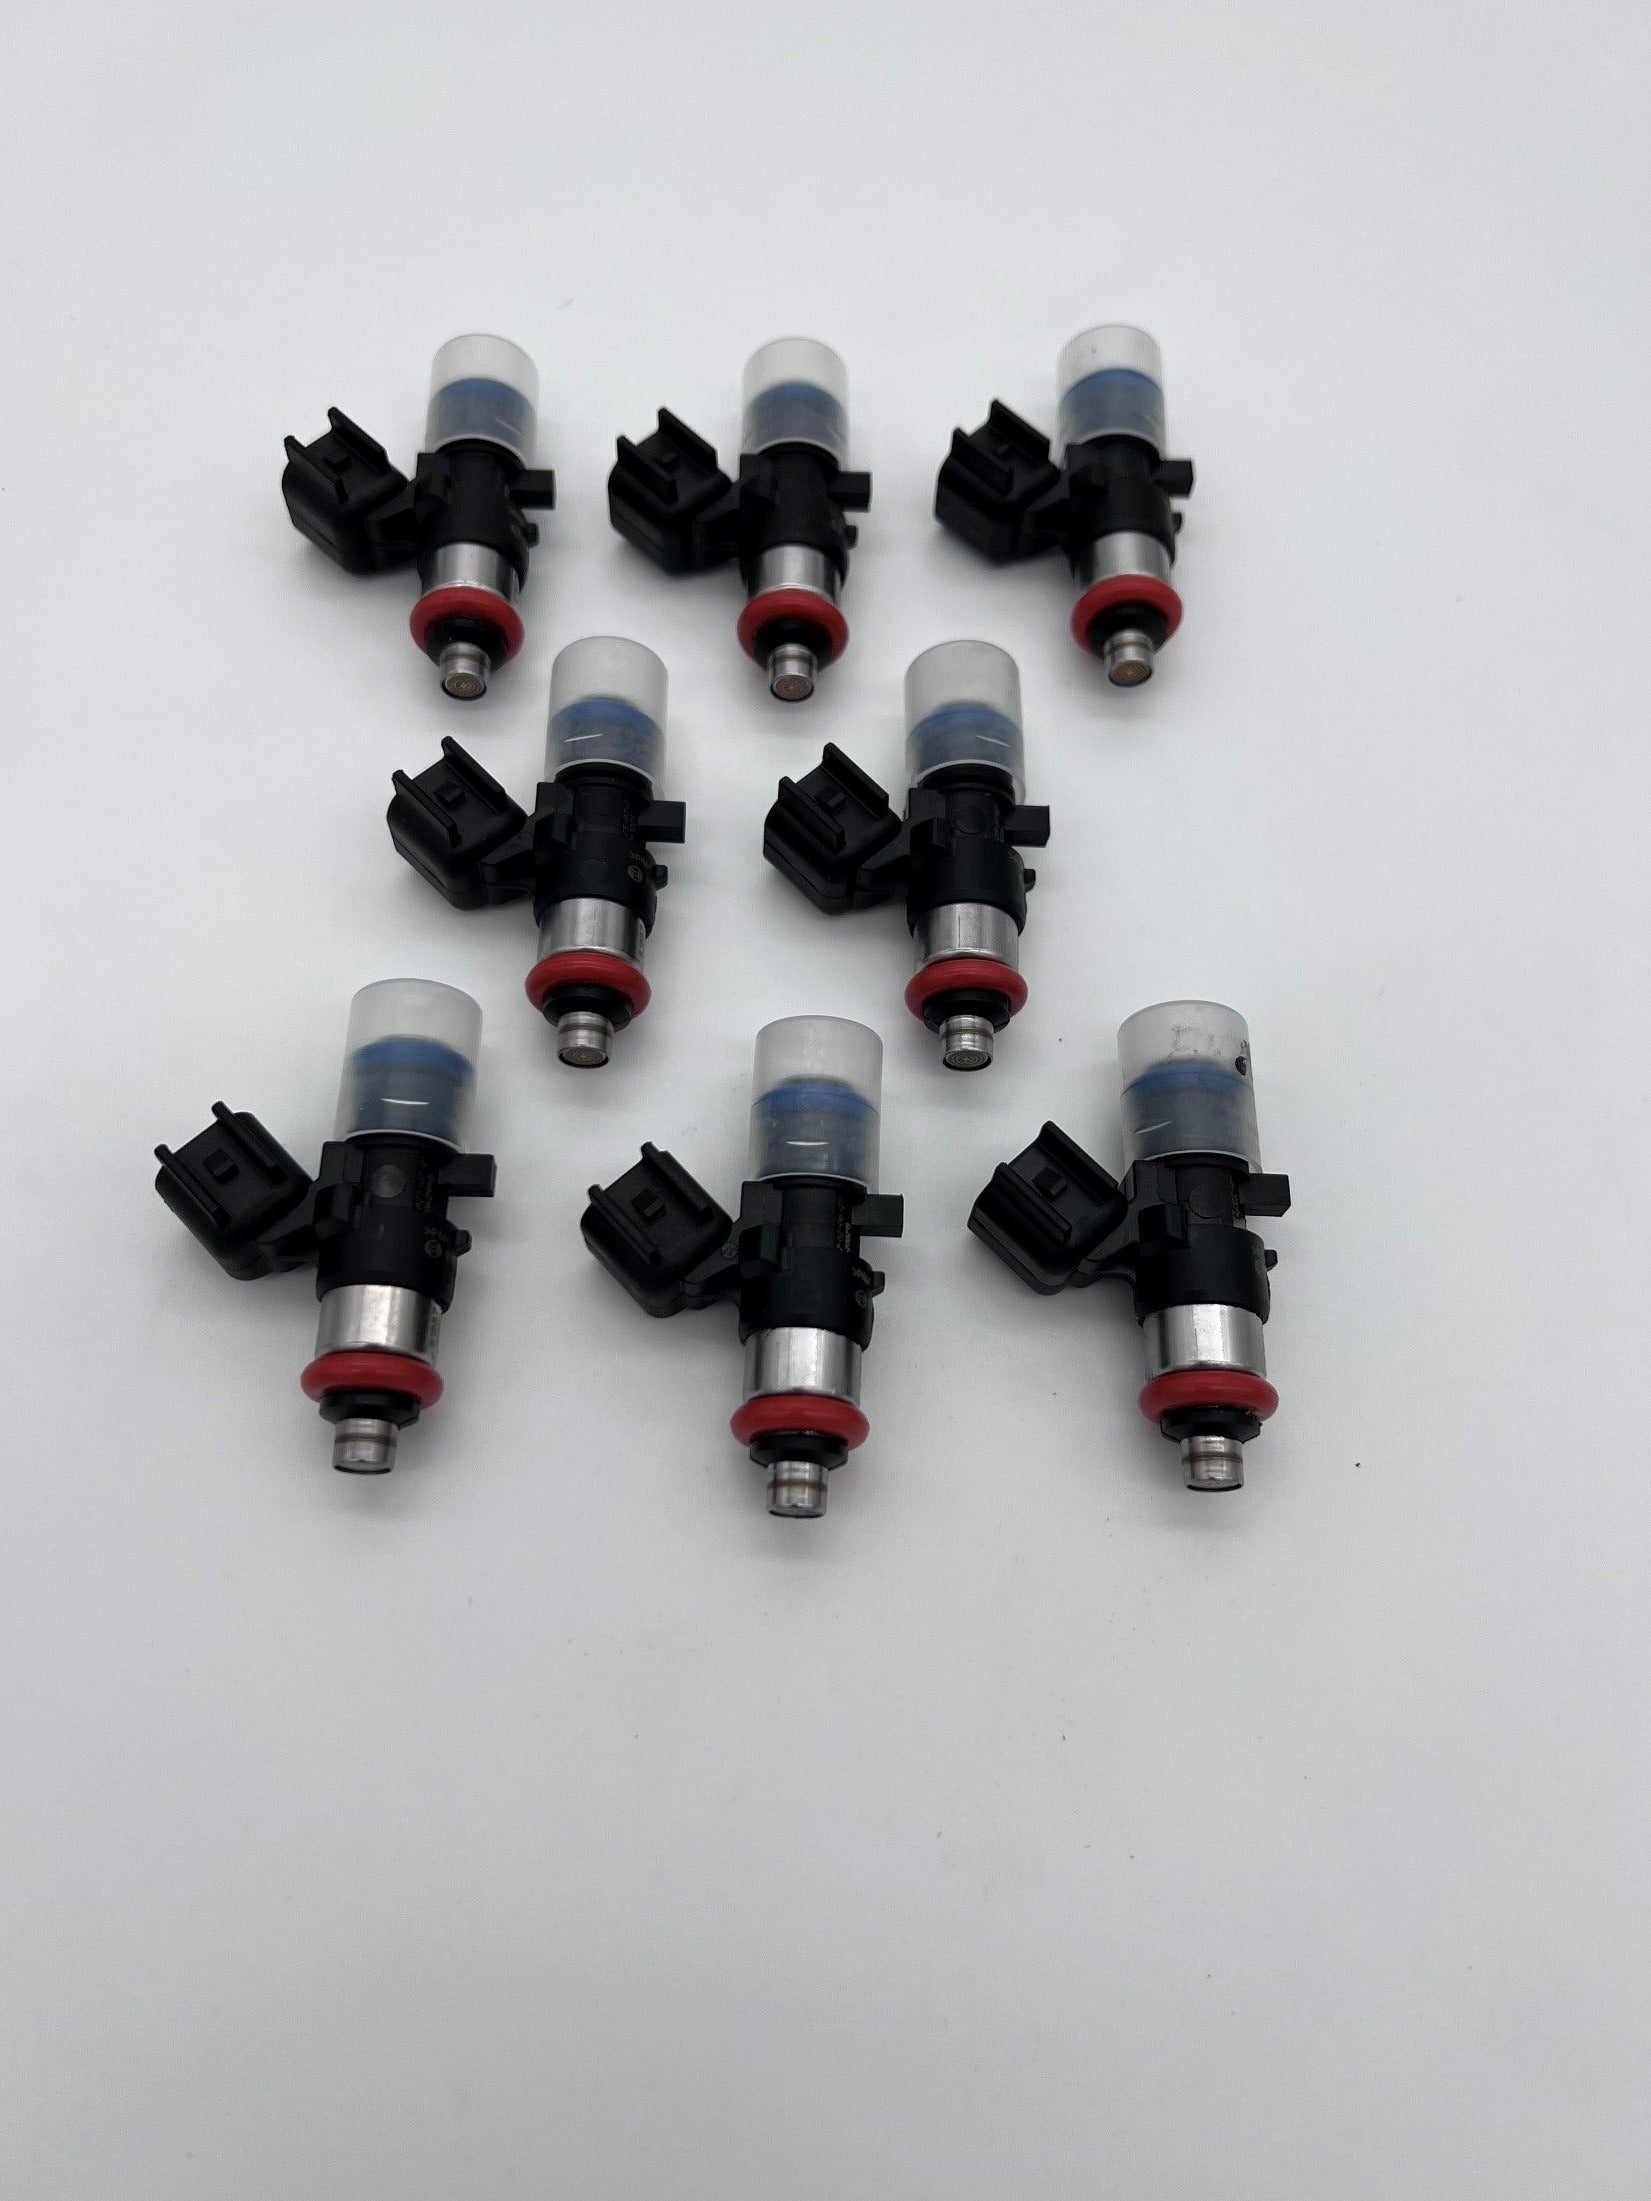 1650 cc min -3.0 BAR (43.5psi) 1900 cc min -4.0 BAR (58psi) Flow Matched Injectors